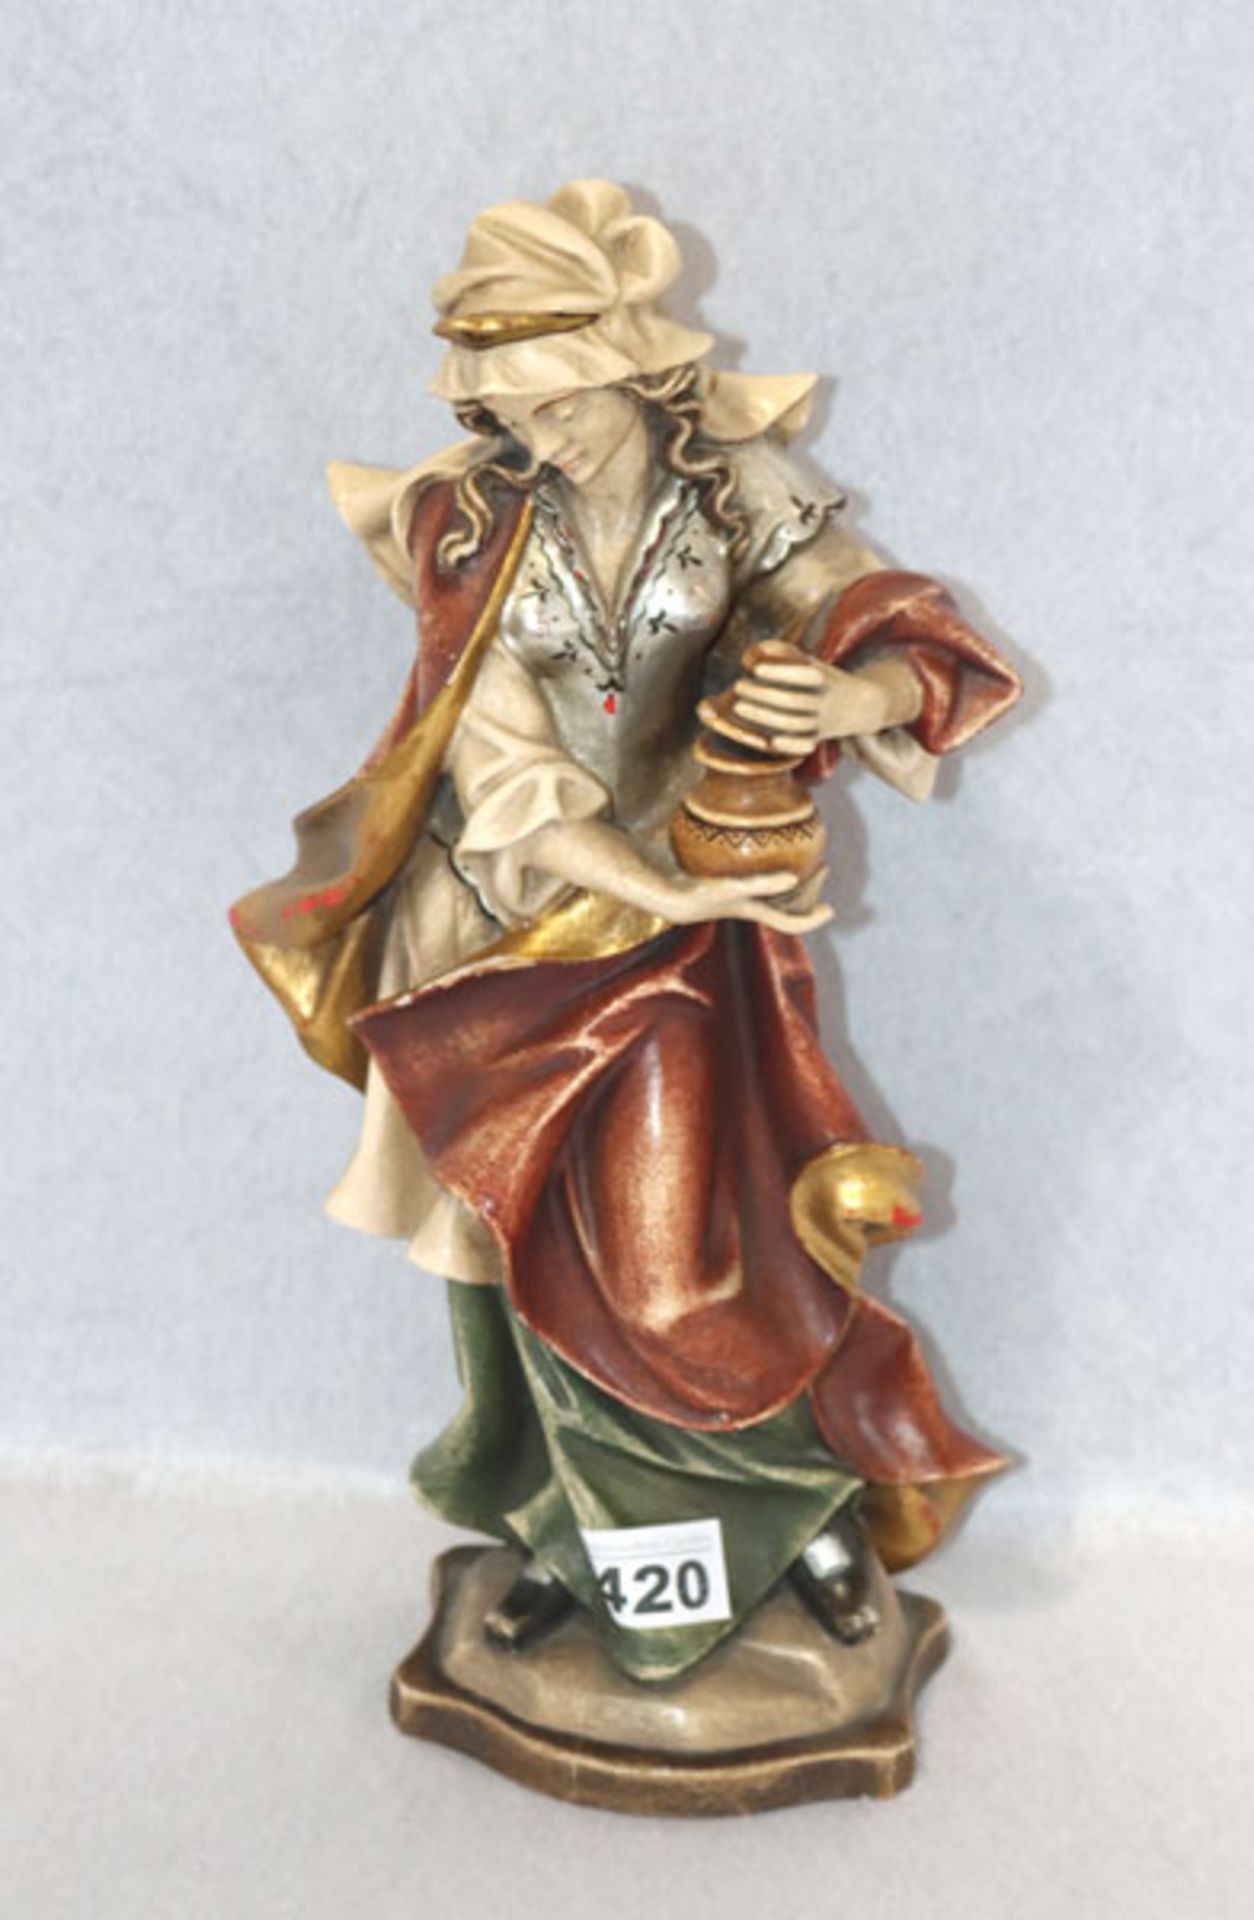 Holz Figurensulptur 'Heilige Dorothea', farbig gefaßt, Fassung teils beschädigt und berieben, H 35